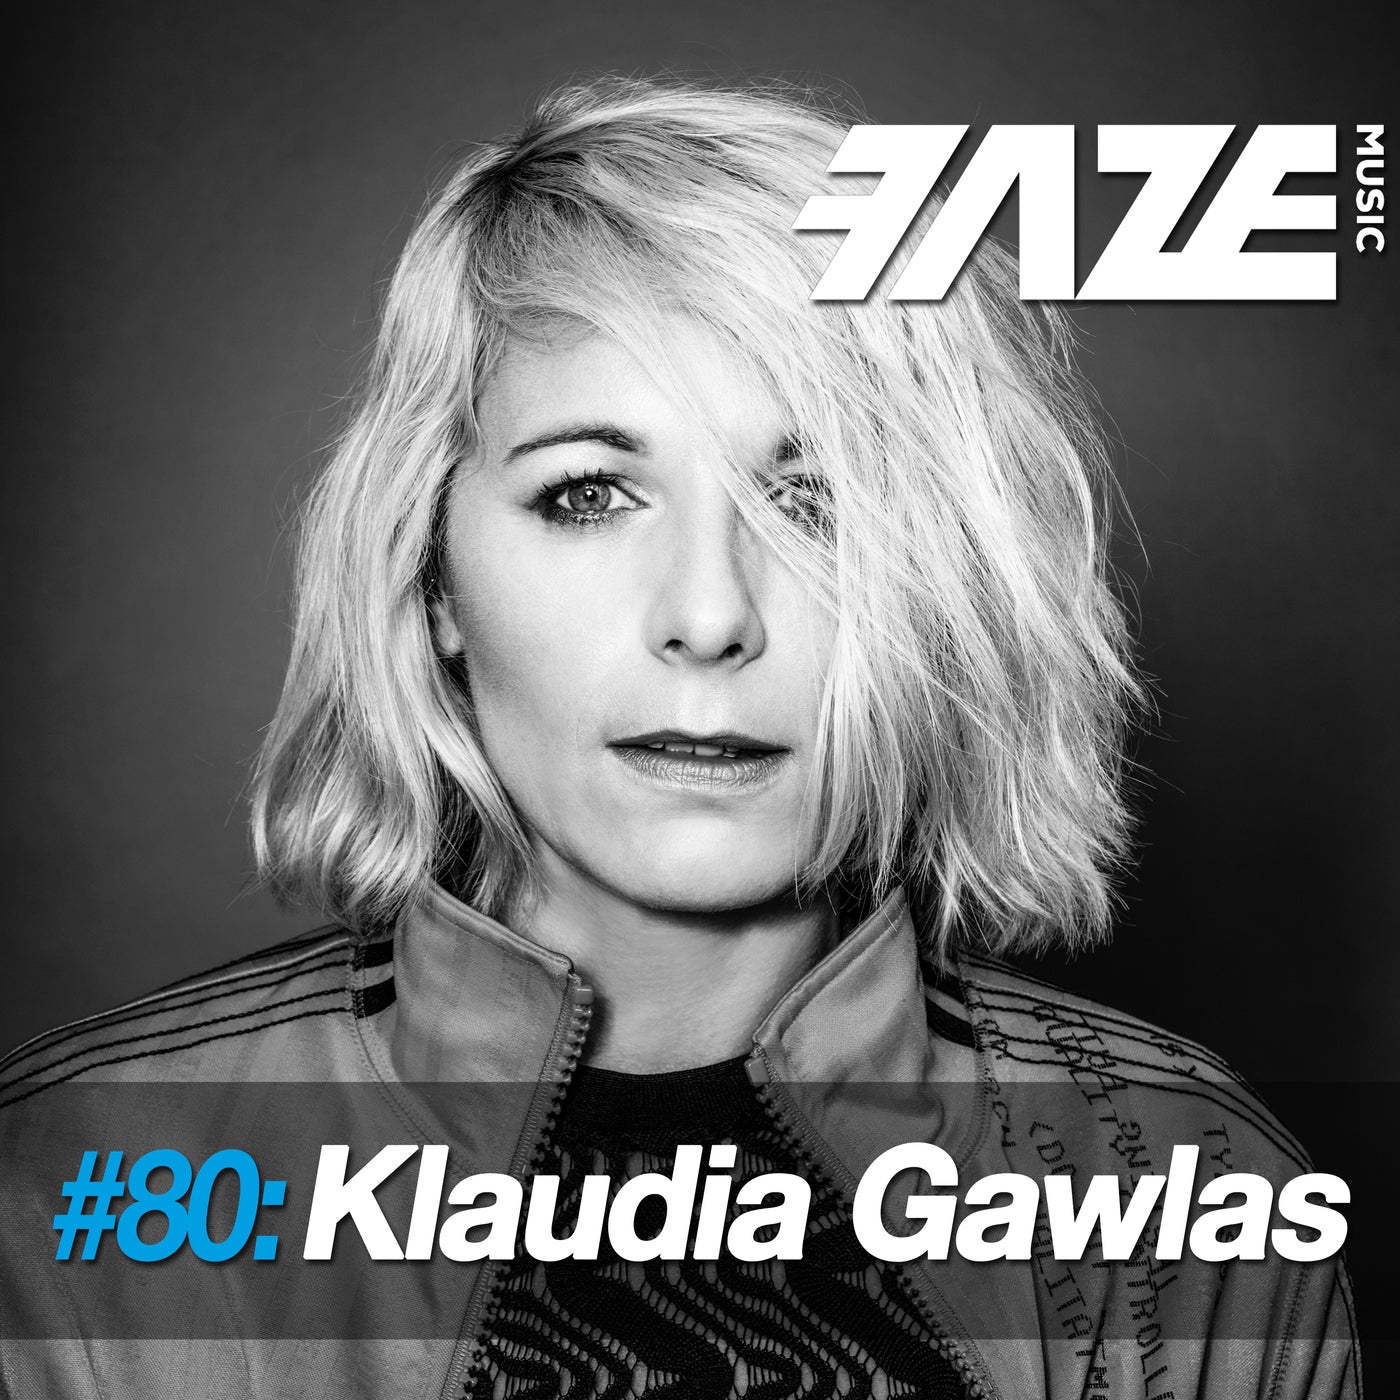 Faze #80: Klaudia Gawlas